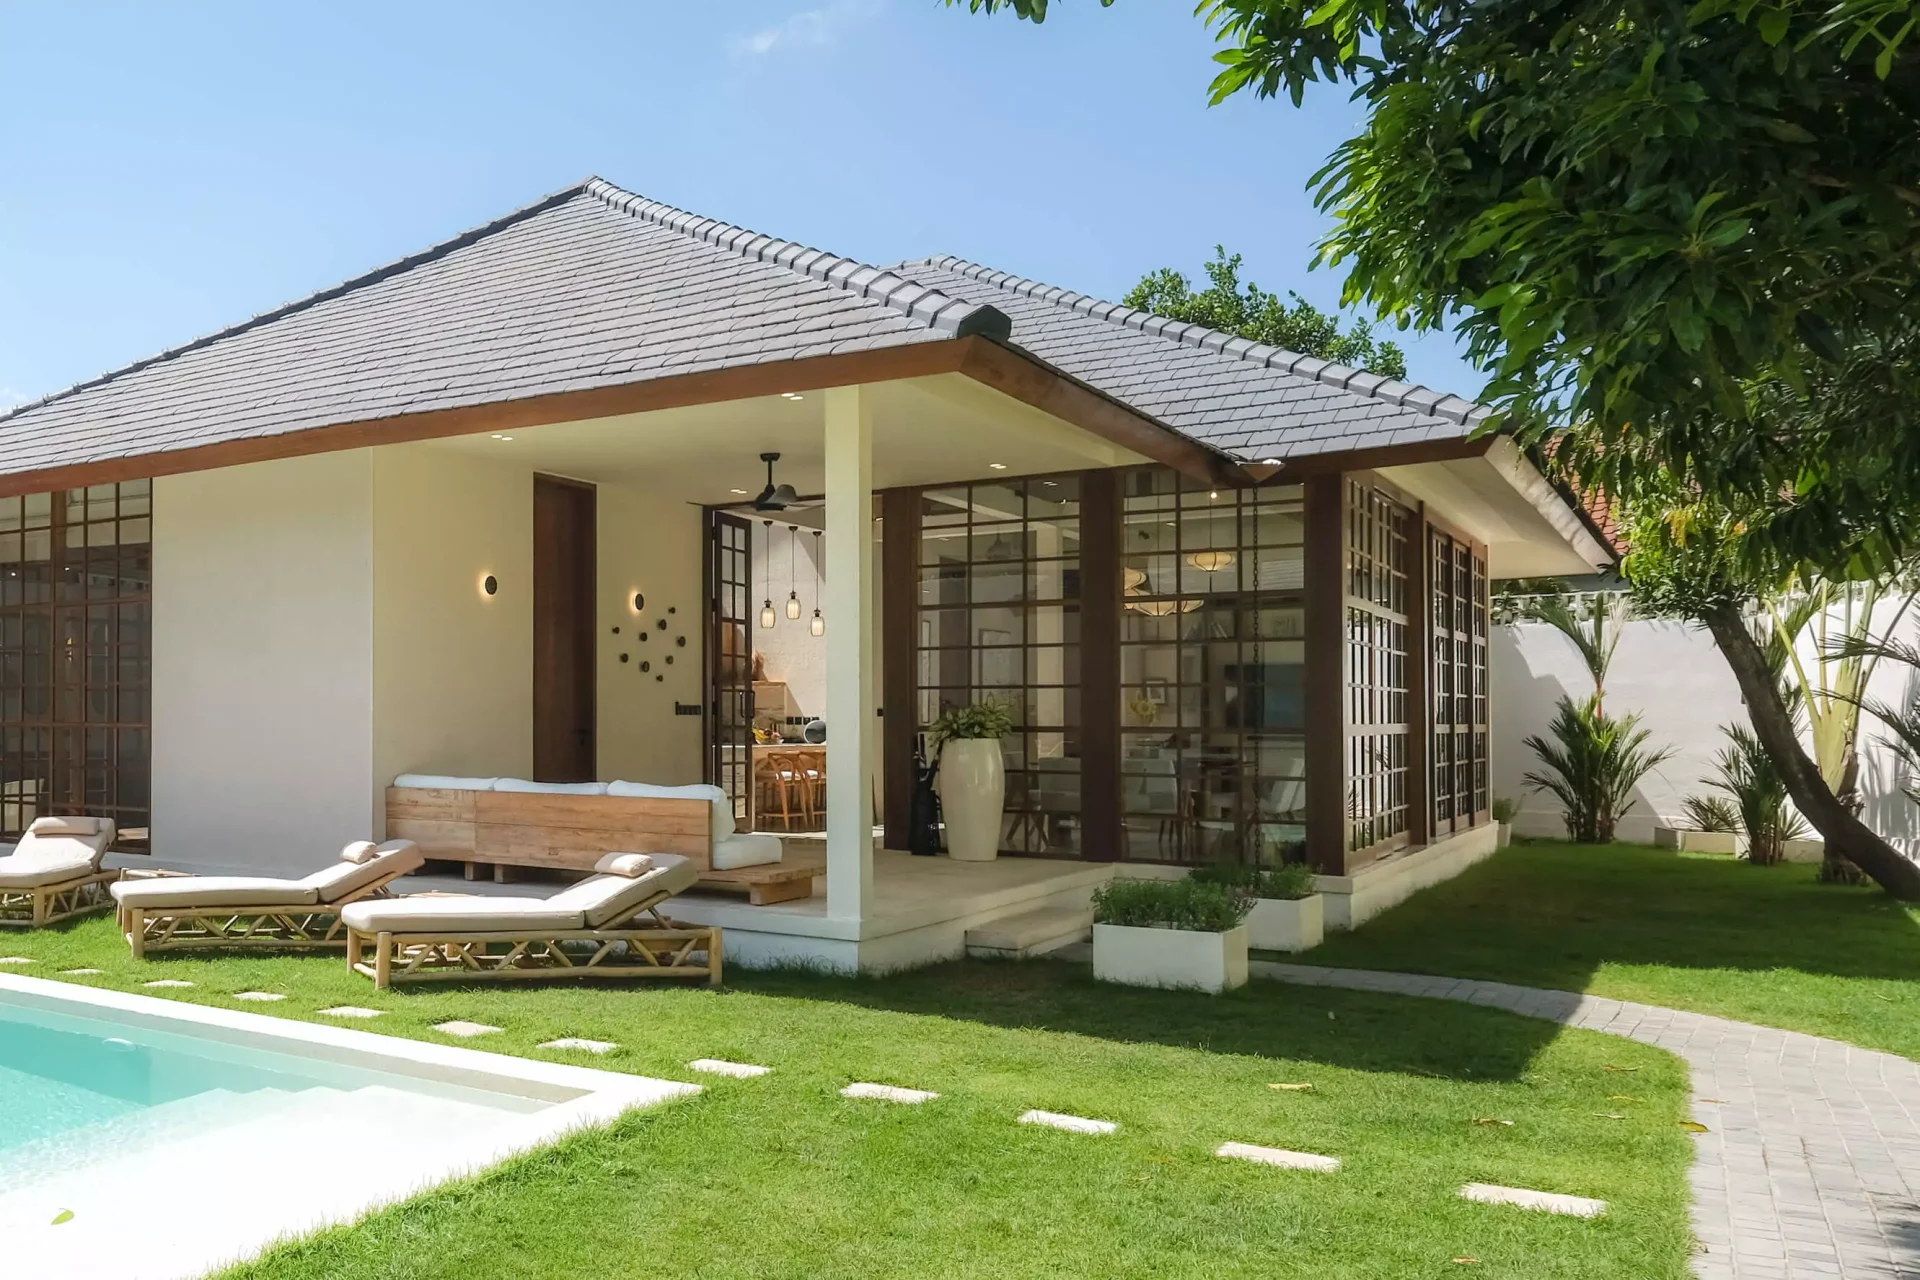 Casa in stil japandi sau wabisabi. O casa realizata in Bali de Studio 2.1 cu texturi naturale, lemn, piatra, culori pamantii si naturale unde vegetatia patrunde in locuinta.